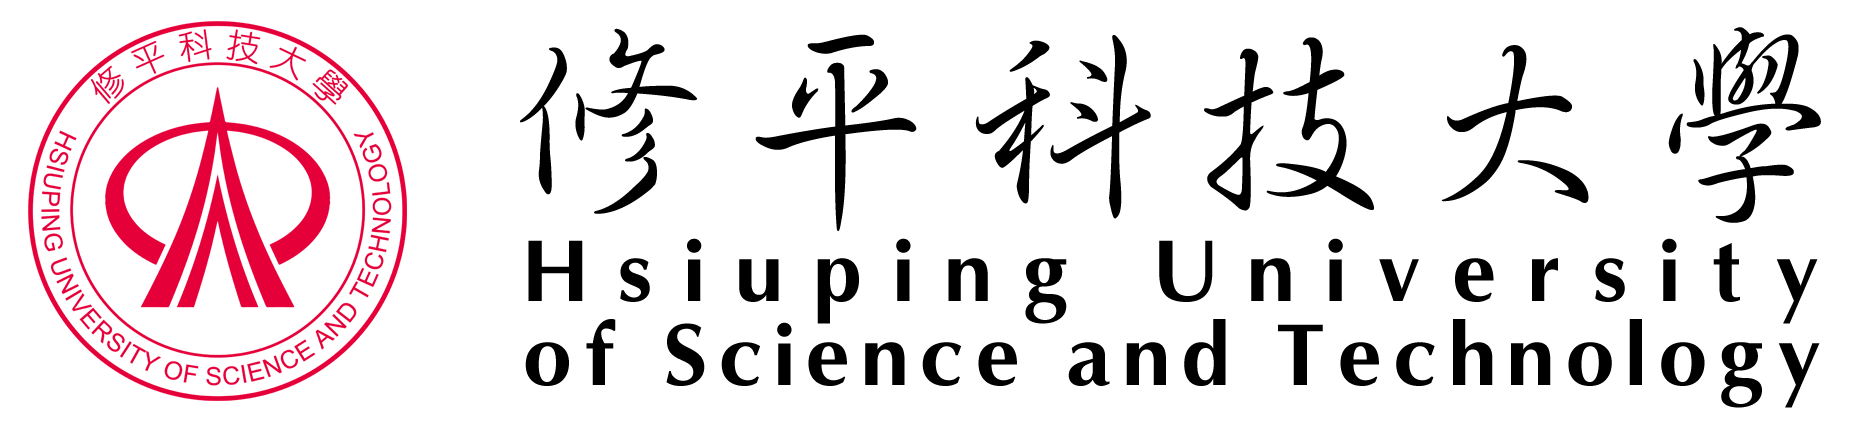 修平科技大學 - Hsiuping University of Science and Technology